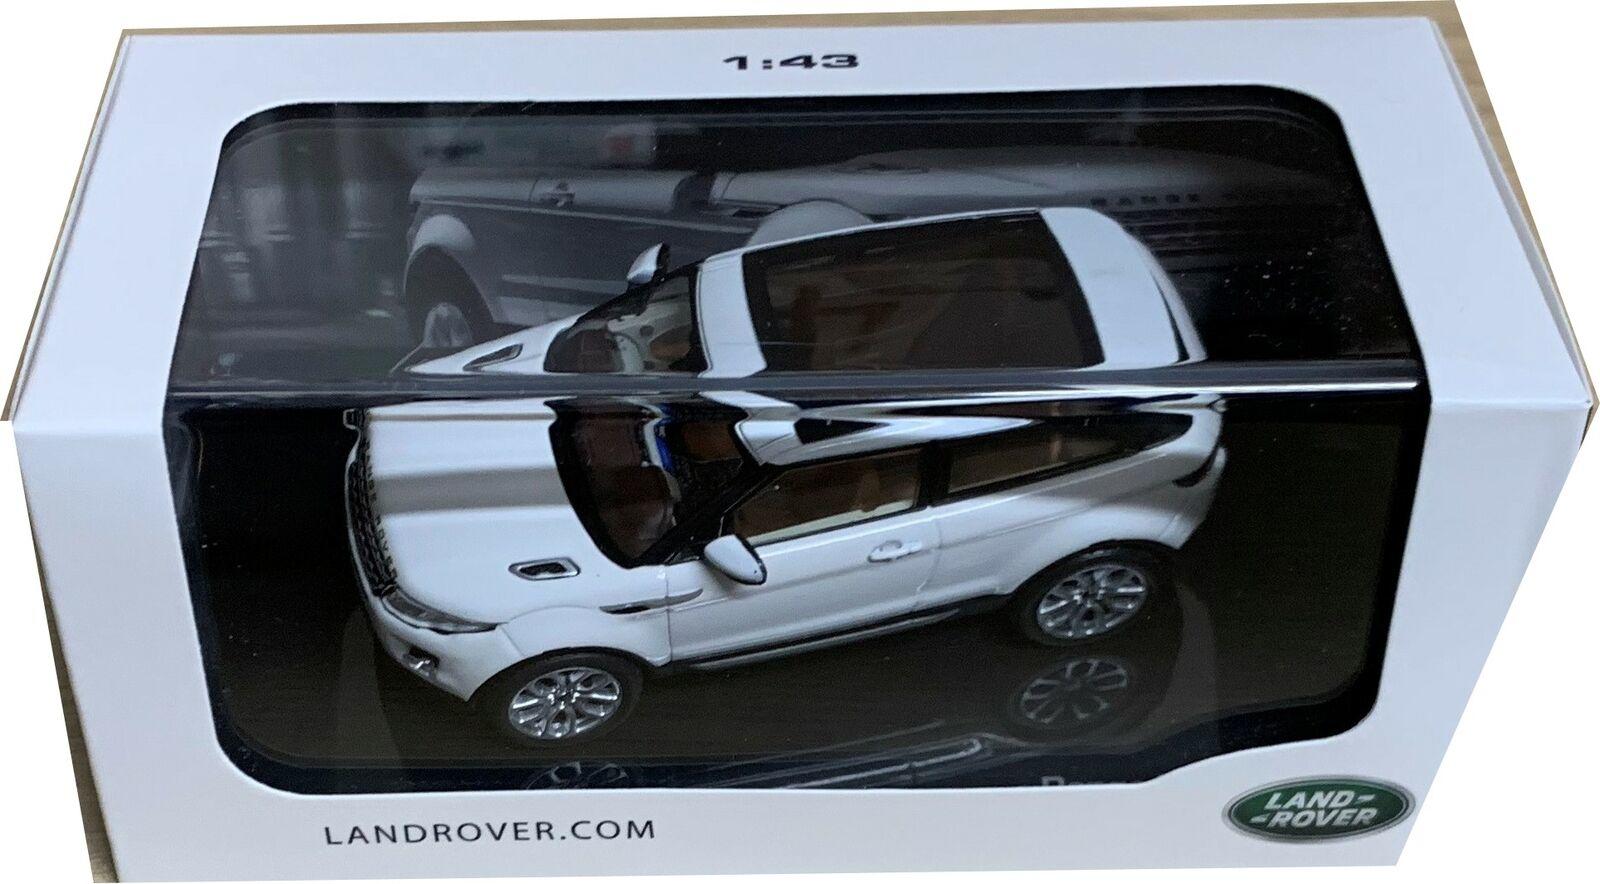 Range Rover Evoque Coupe in fuji white 1:43 scale diecast model from IXO